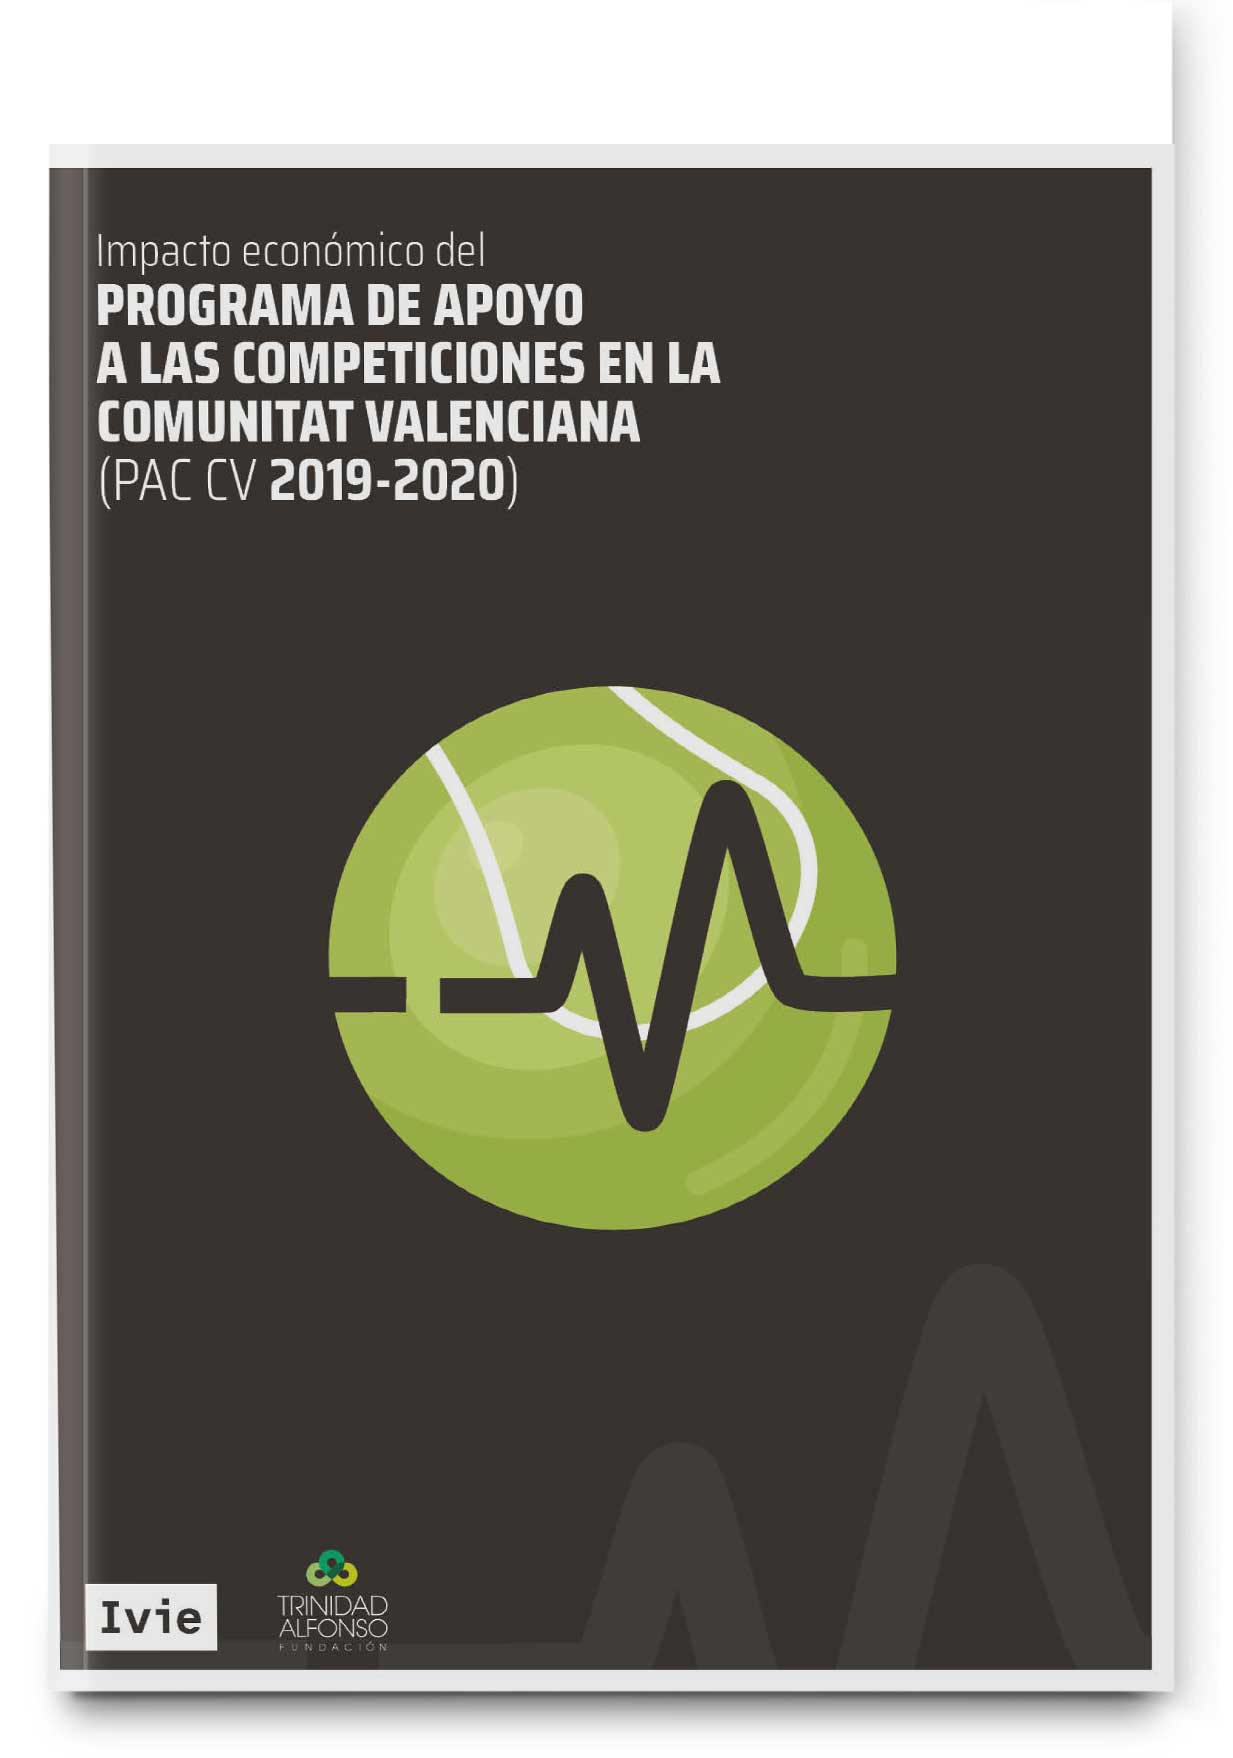 Impacto económico del Programa de Apoyo a competiciones deportivas de la Comunitat Valenciana de la Fundación Trinidad Alfonso. Cuarta edición